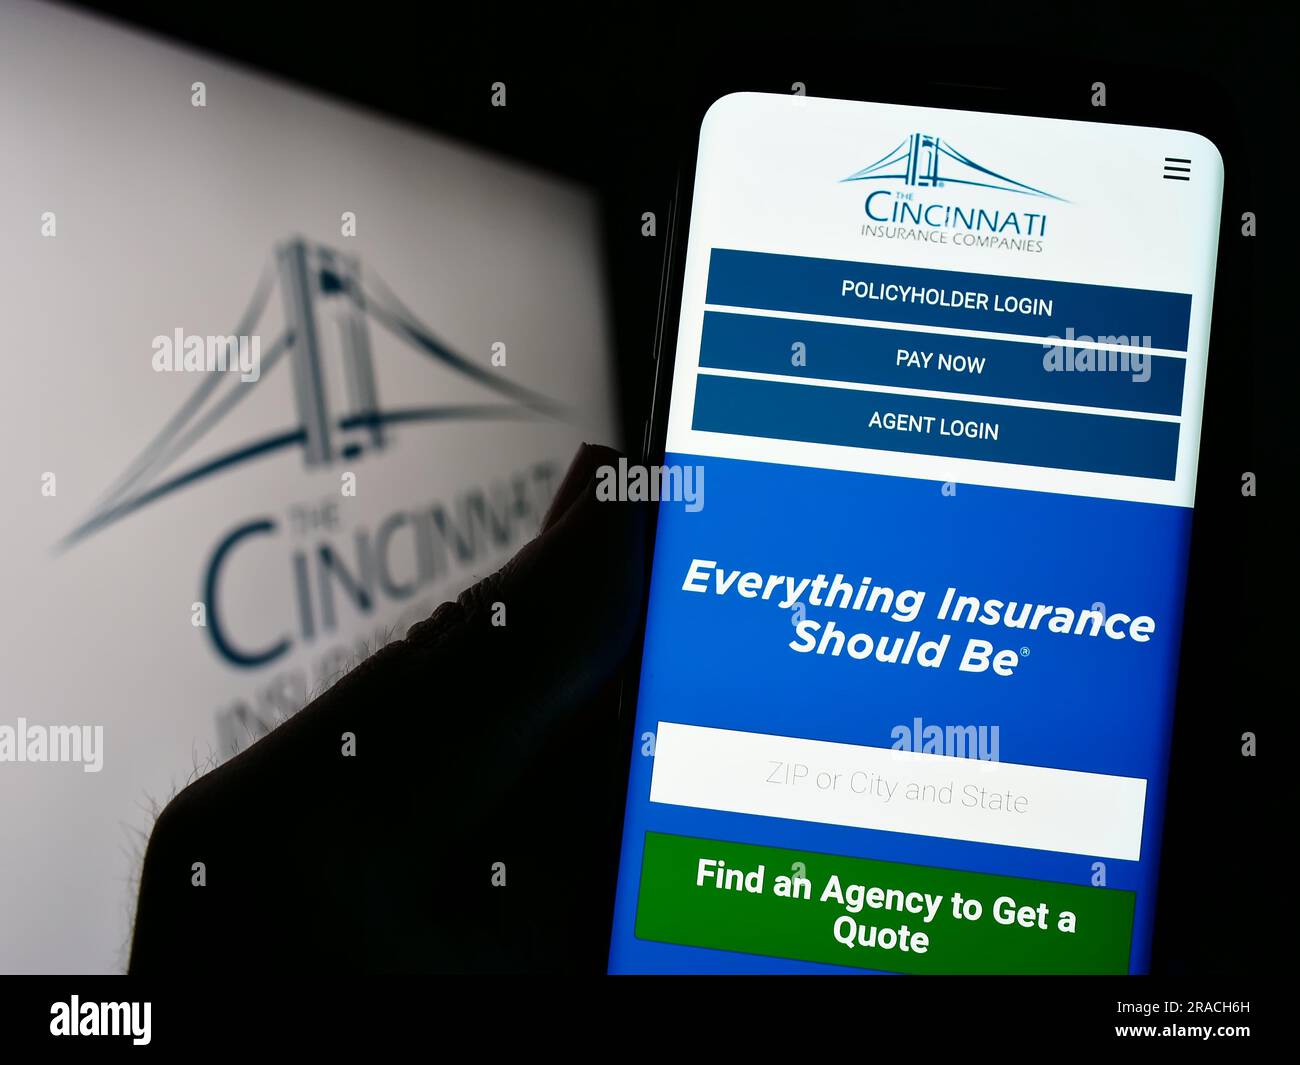 Personne tenant un smartphone avec la page Web de la société américaine Cincinnati Financial Corporation sur l'écran avec logo. Concentrez-vous sur le centre de l'écran du téléphone. Banque D'Images